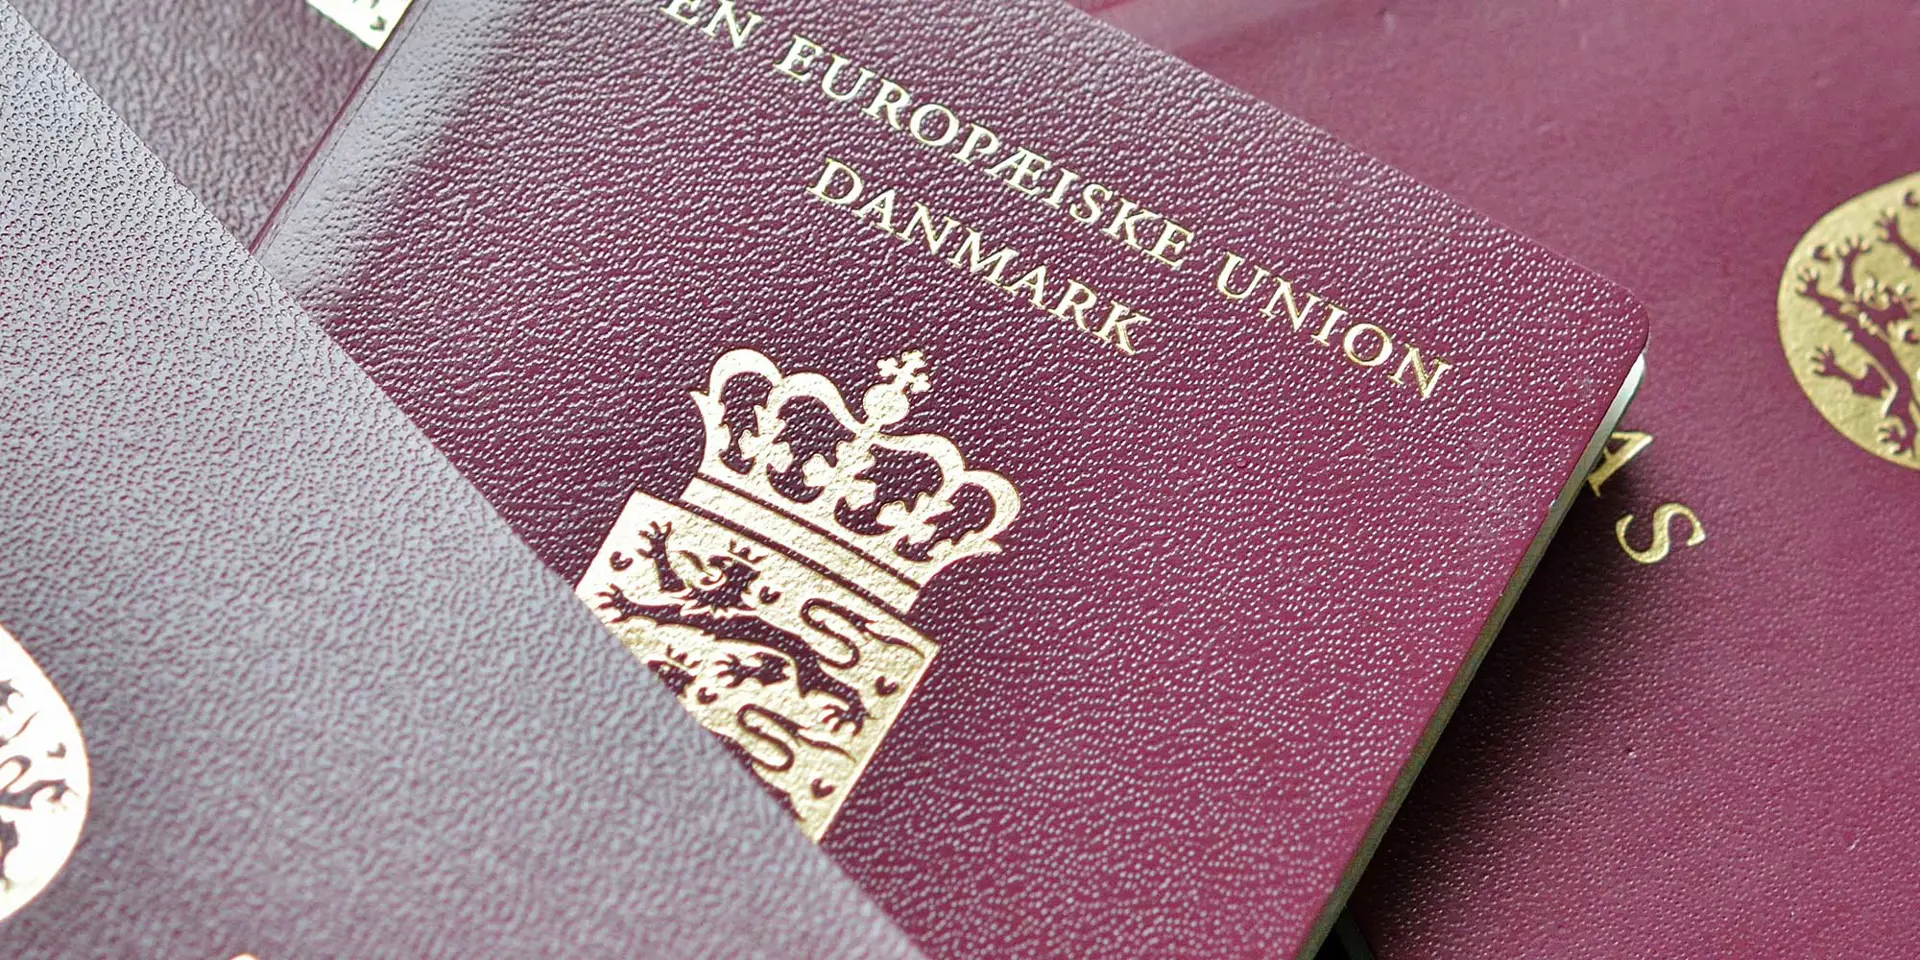 3 danske pas ligger i en bunke